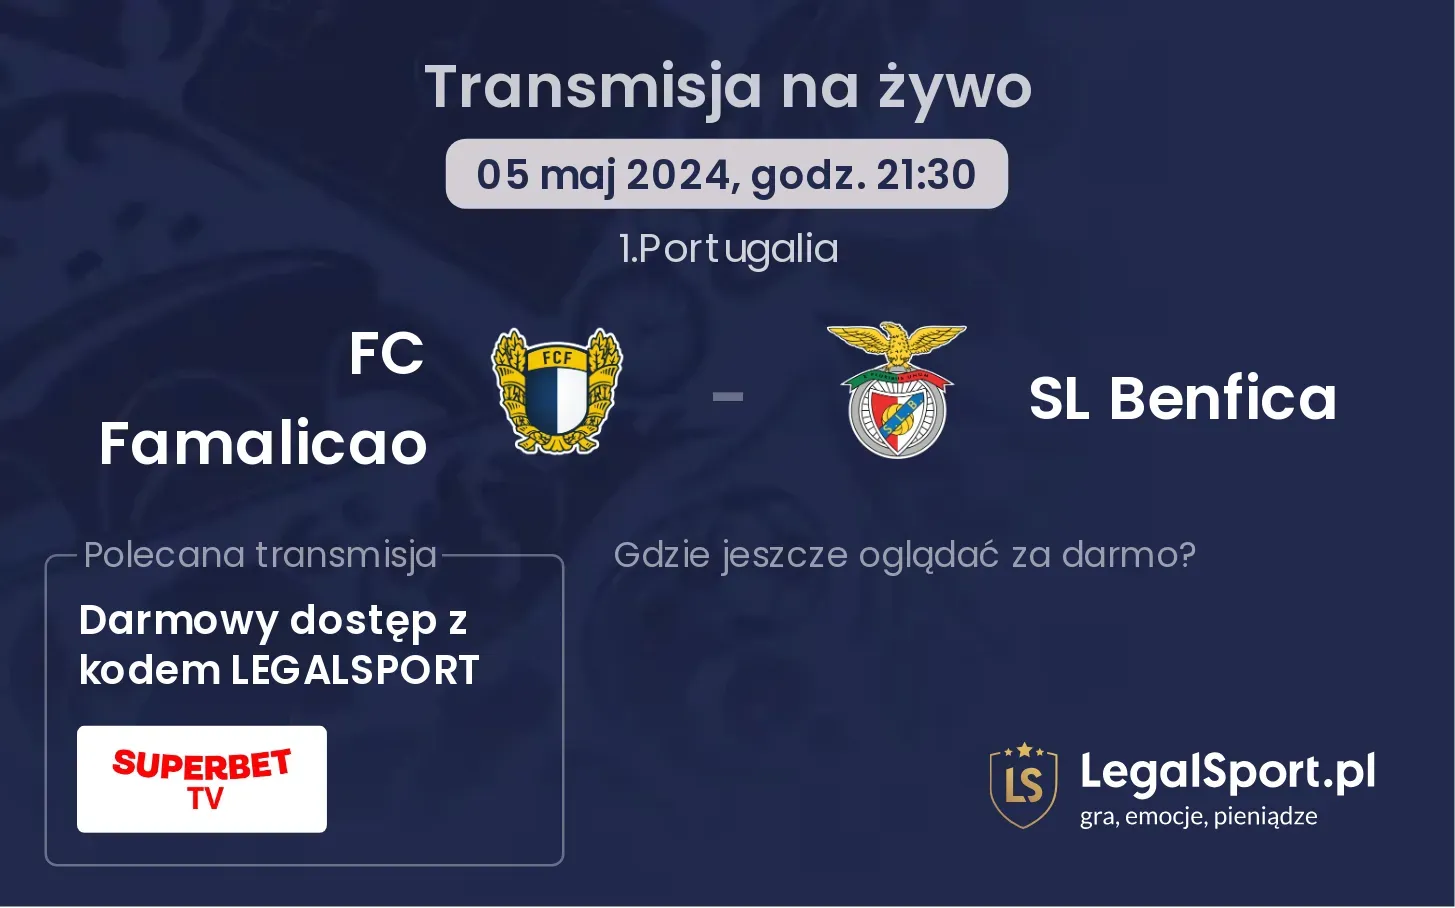 FC Famalicao - SL Benfica transmisja na żywo